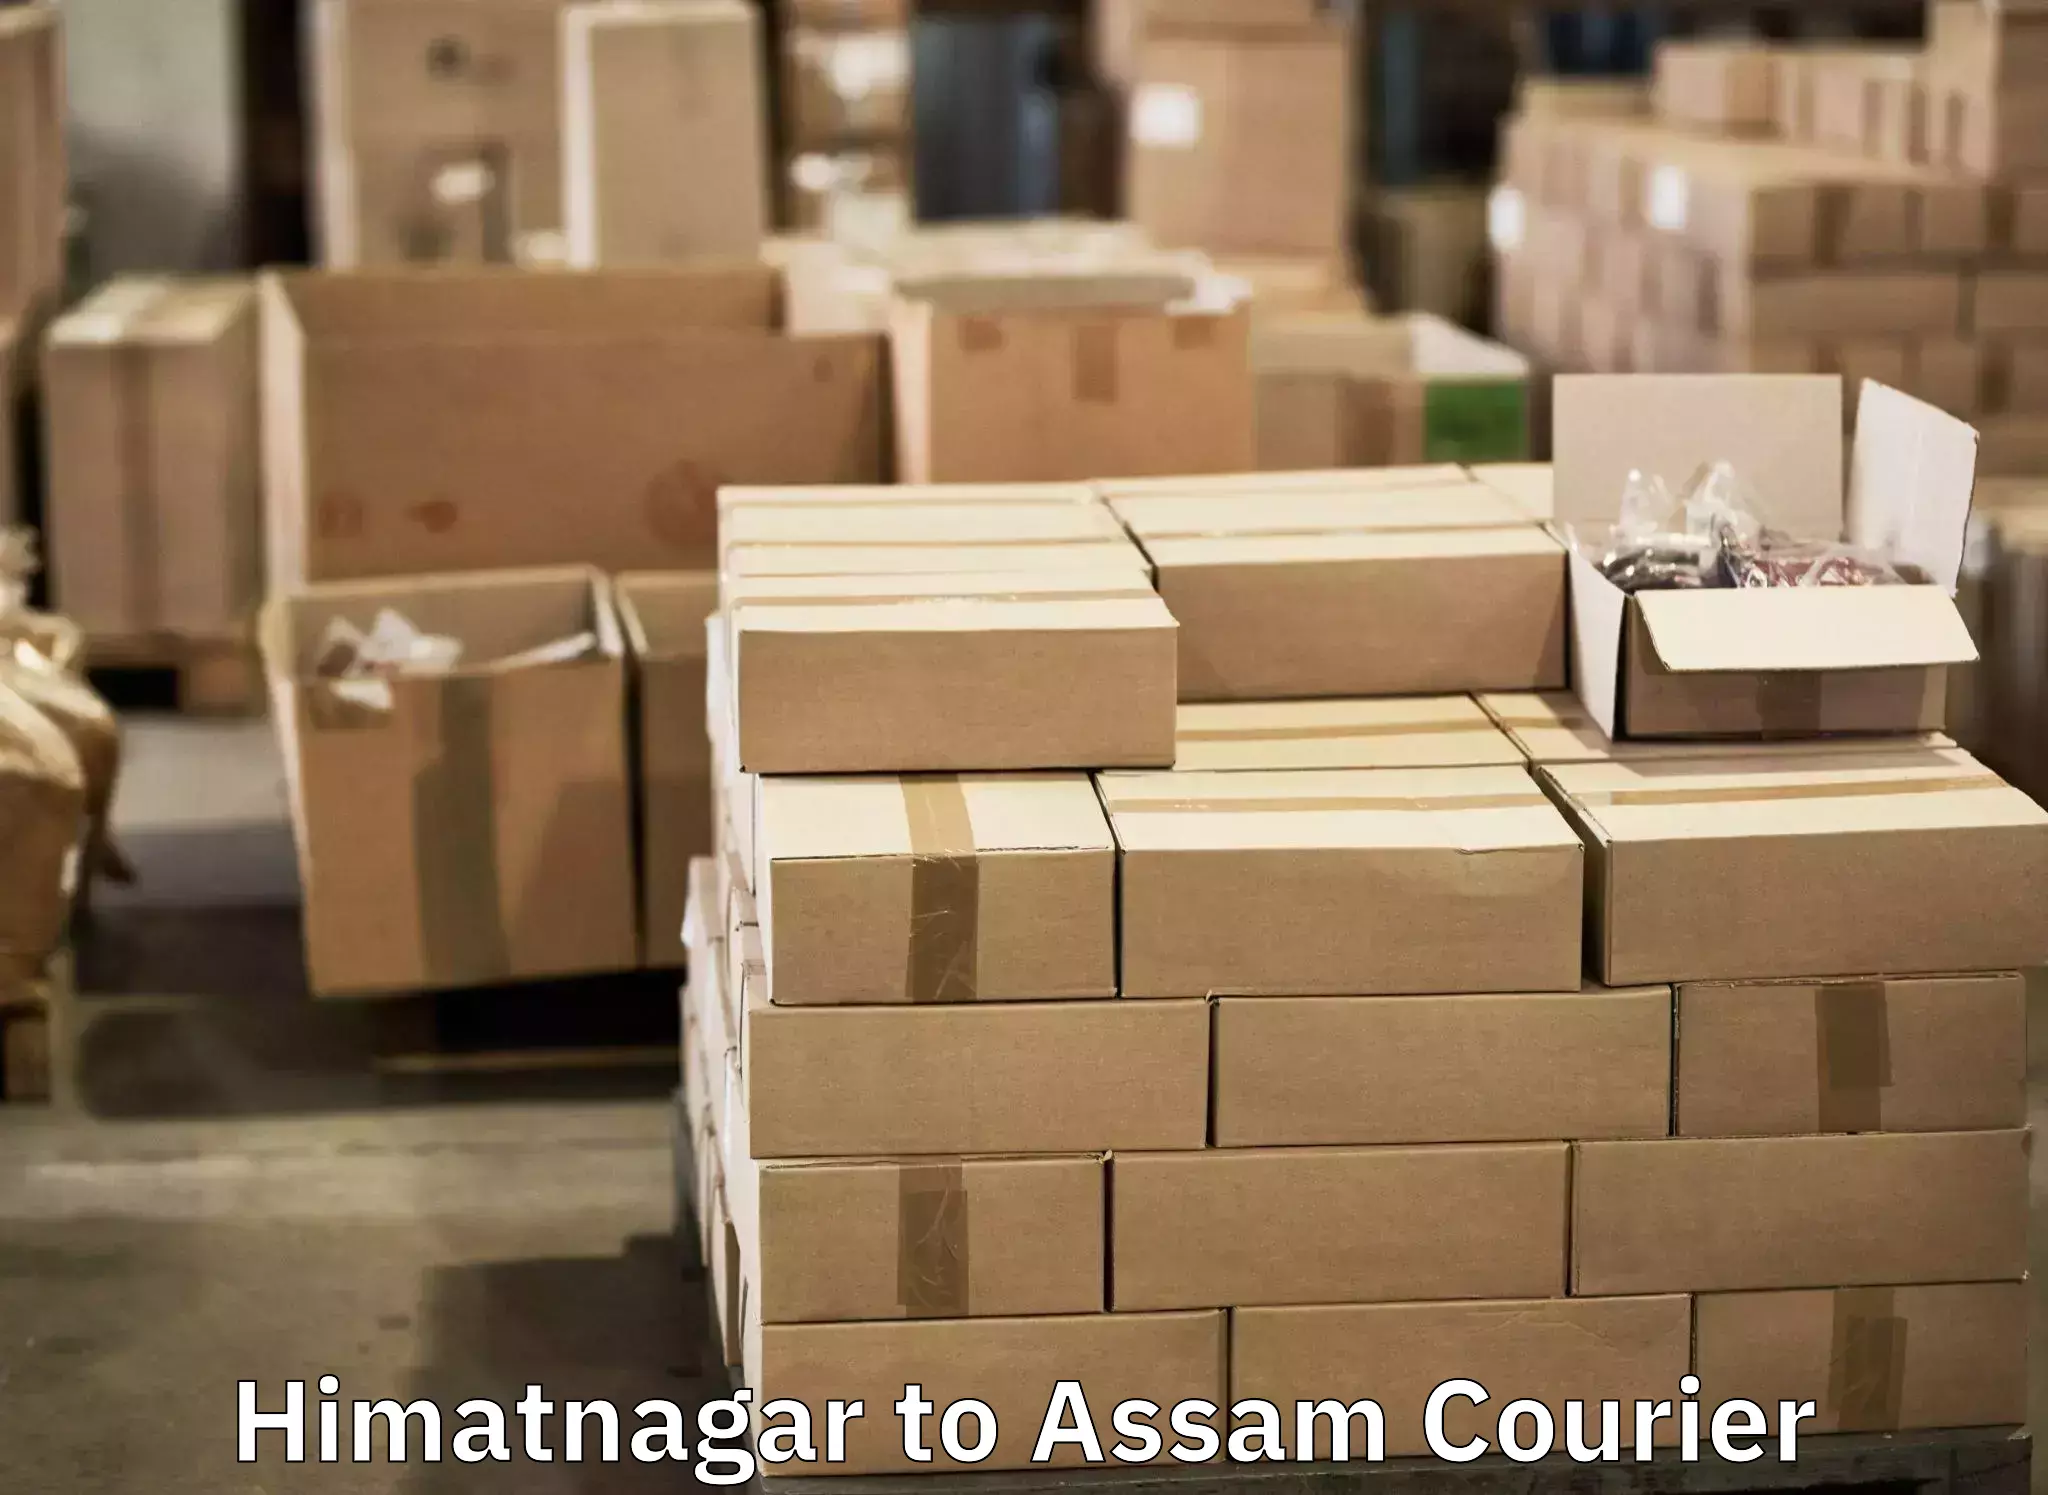 Baggage shipping service Himatnagar to Cachar